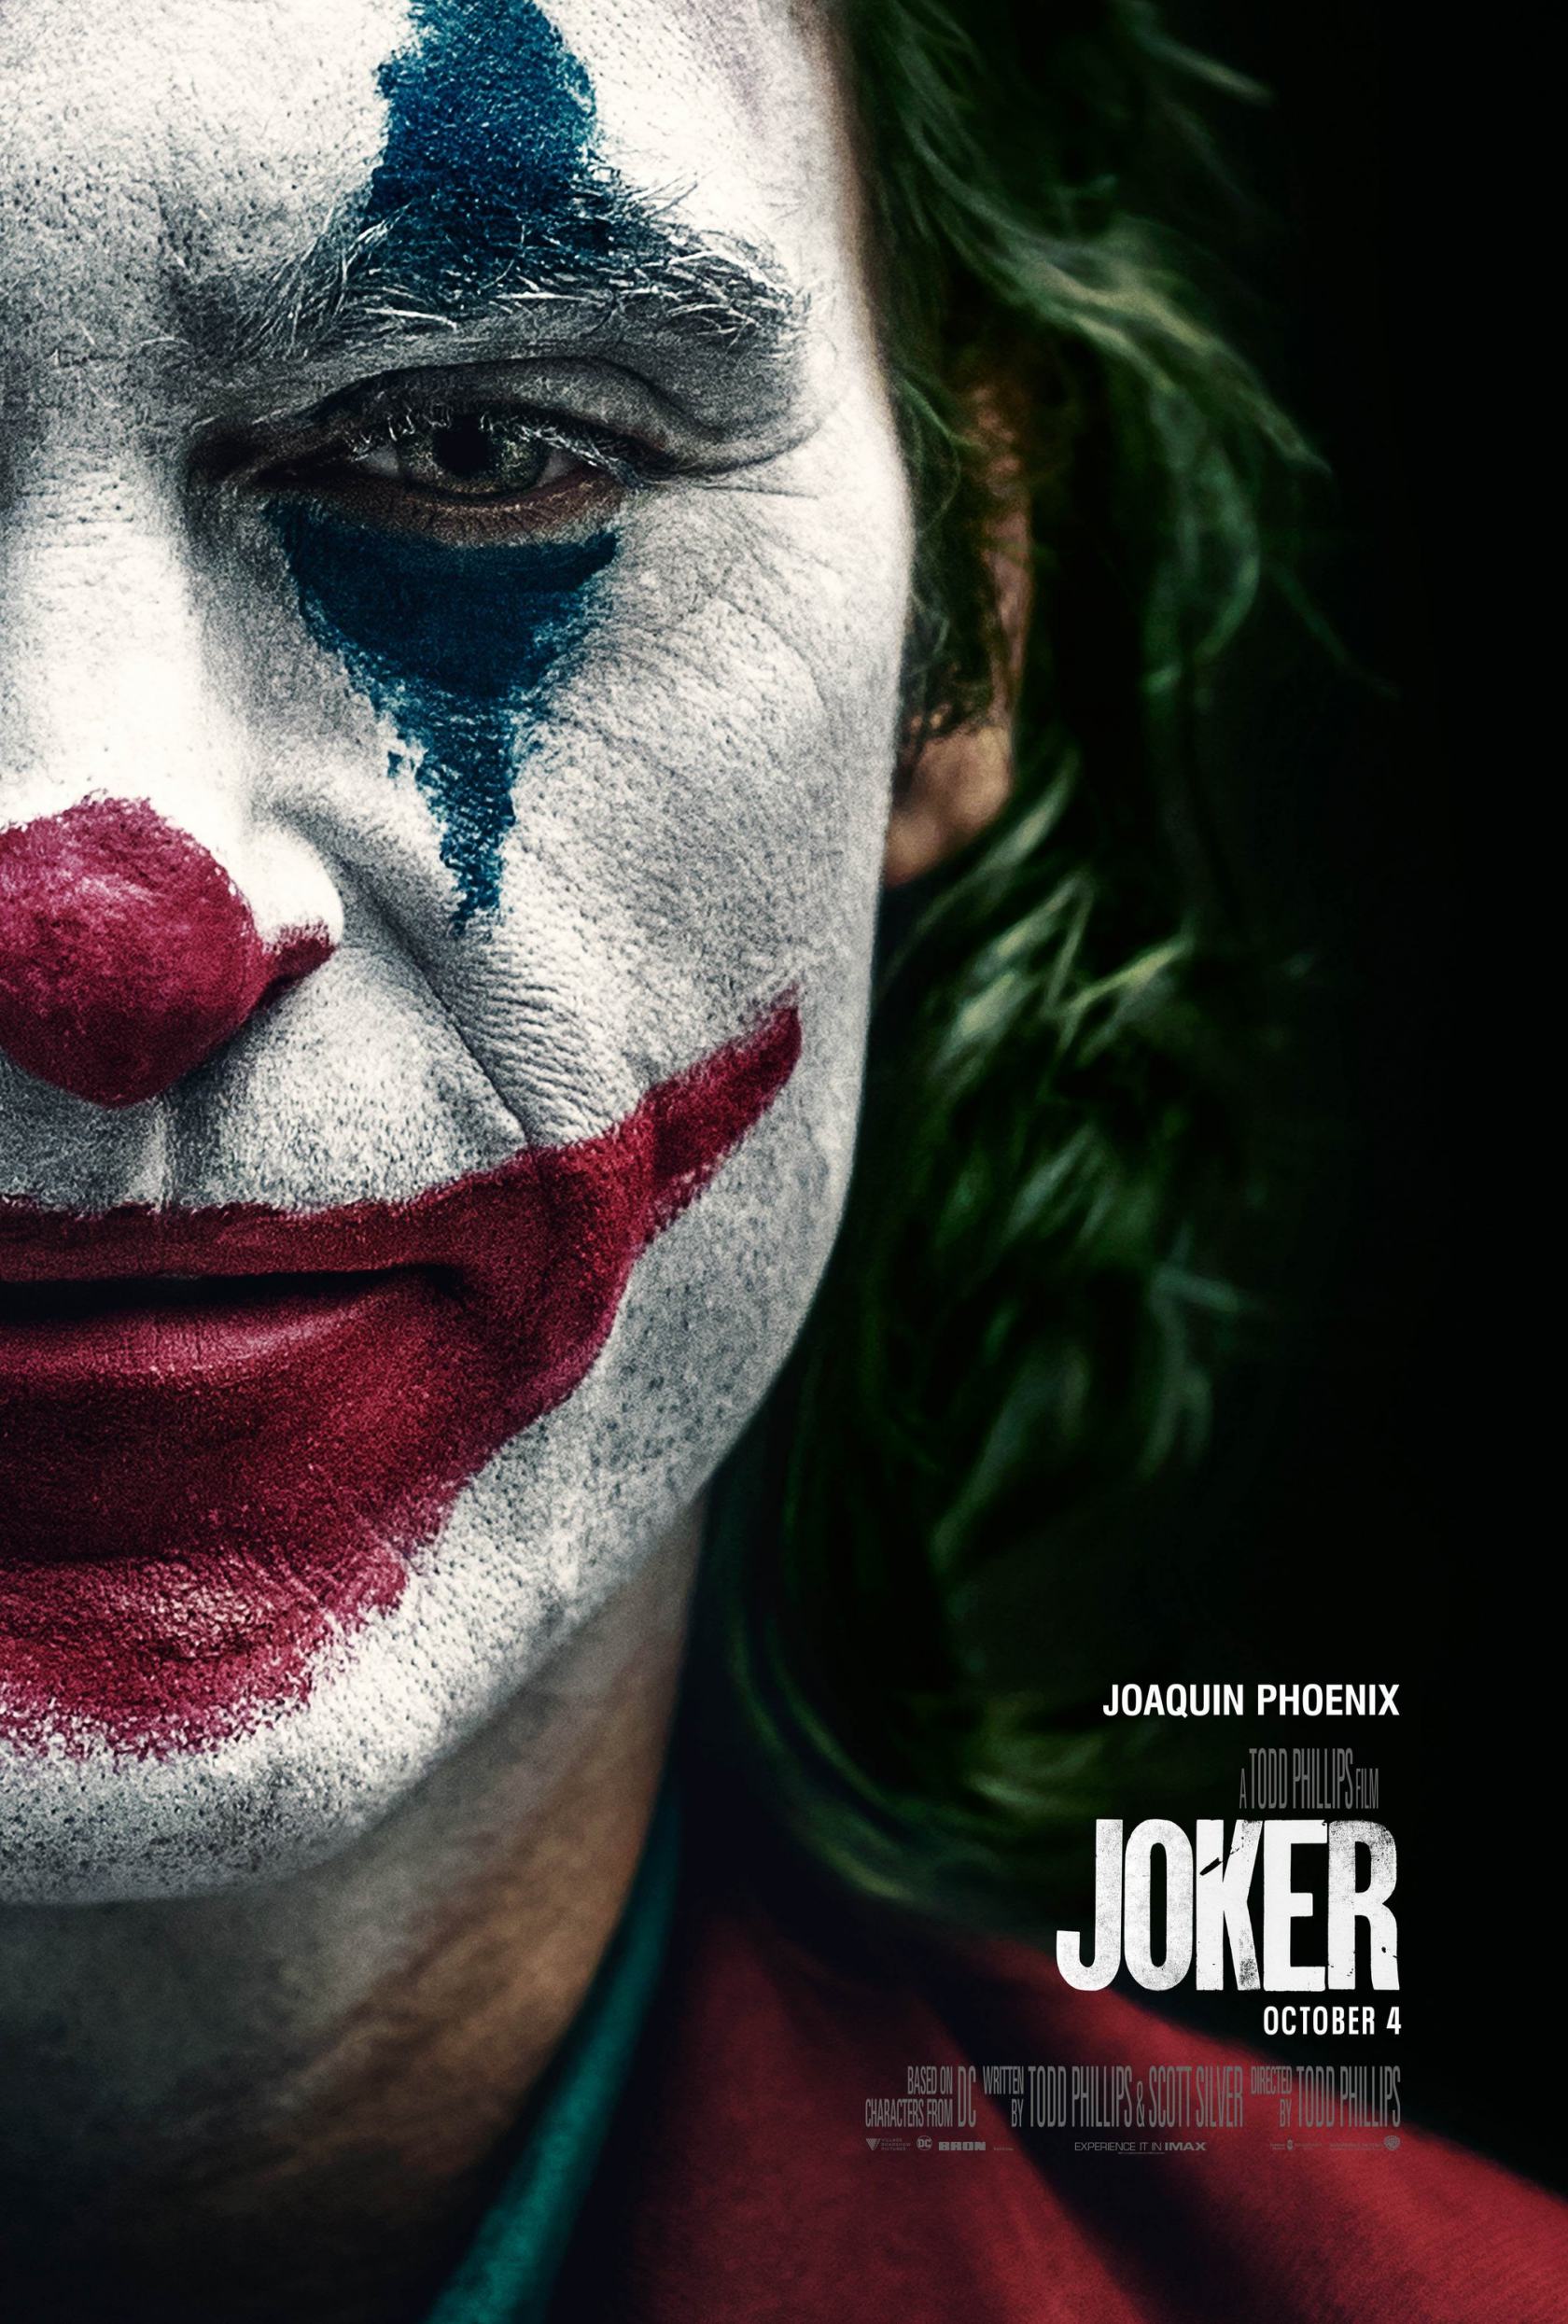 joker-2019-poster-4.jpg